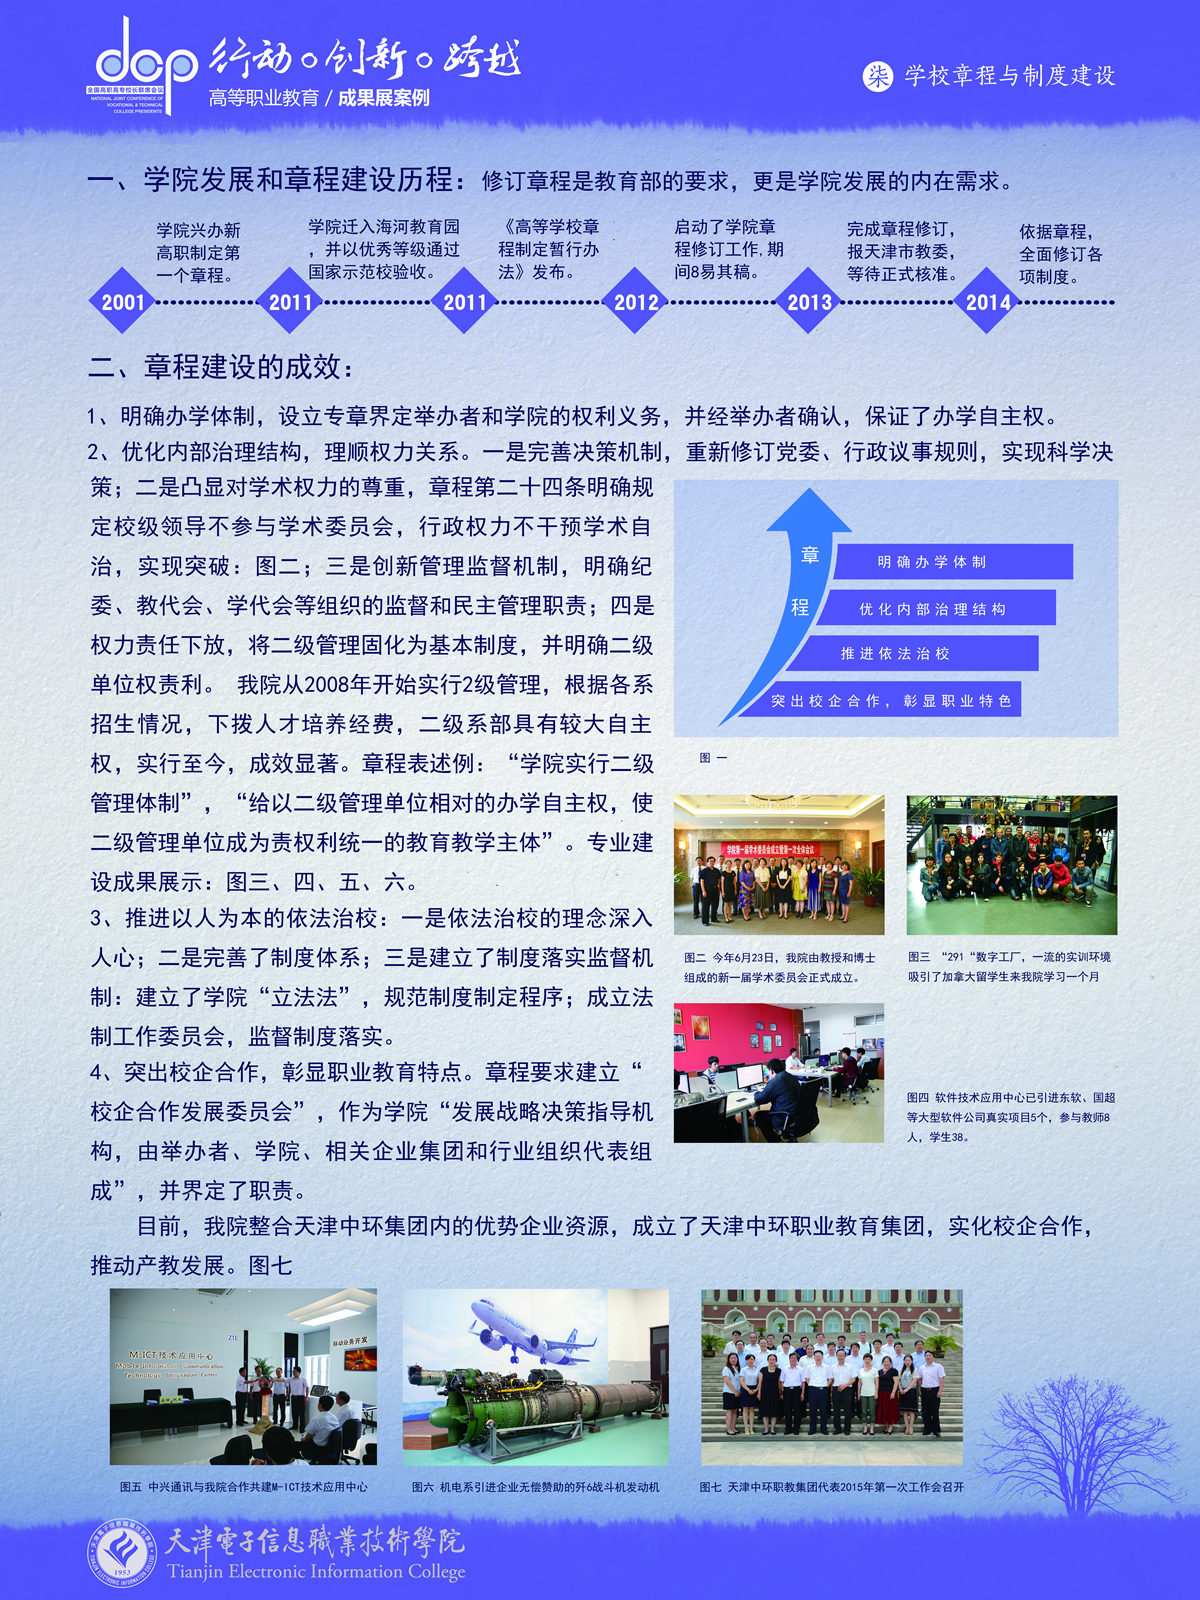 天津电子信息职业技术学院+宣传展板+学院章程与制度建设.jpg